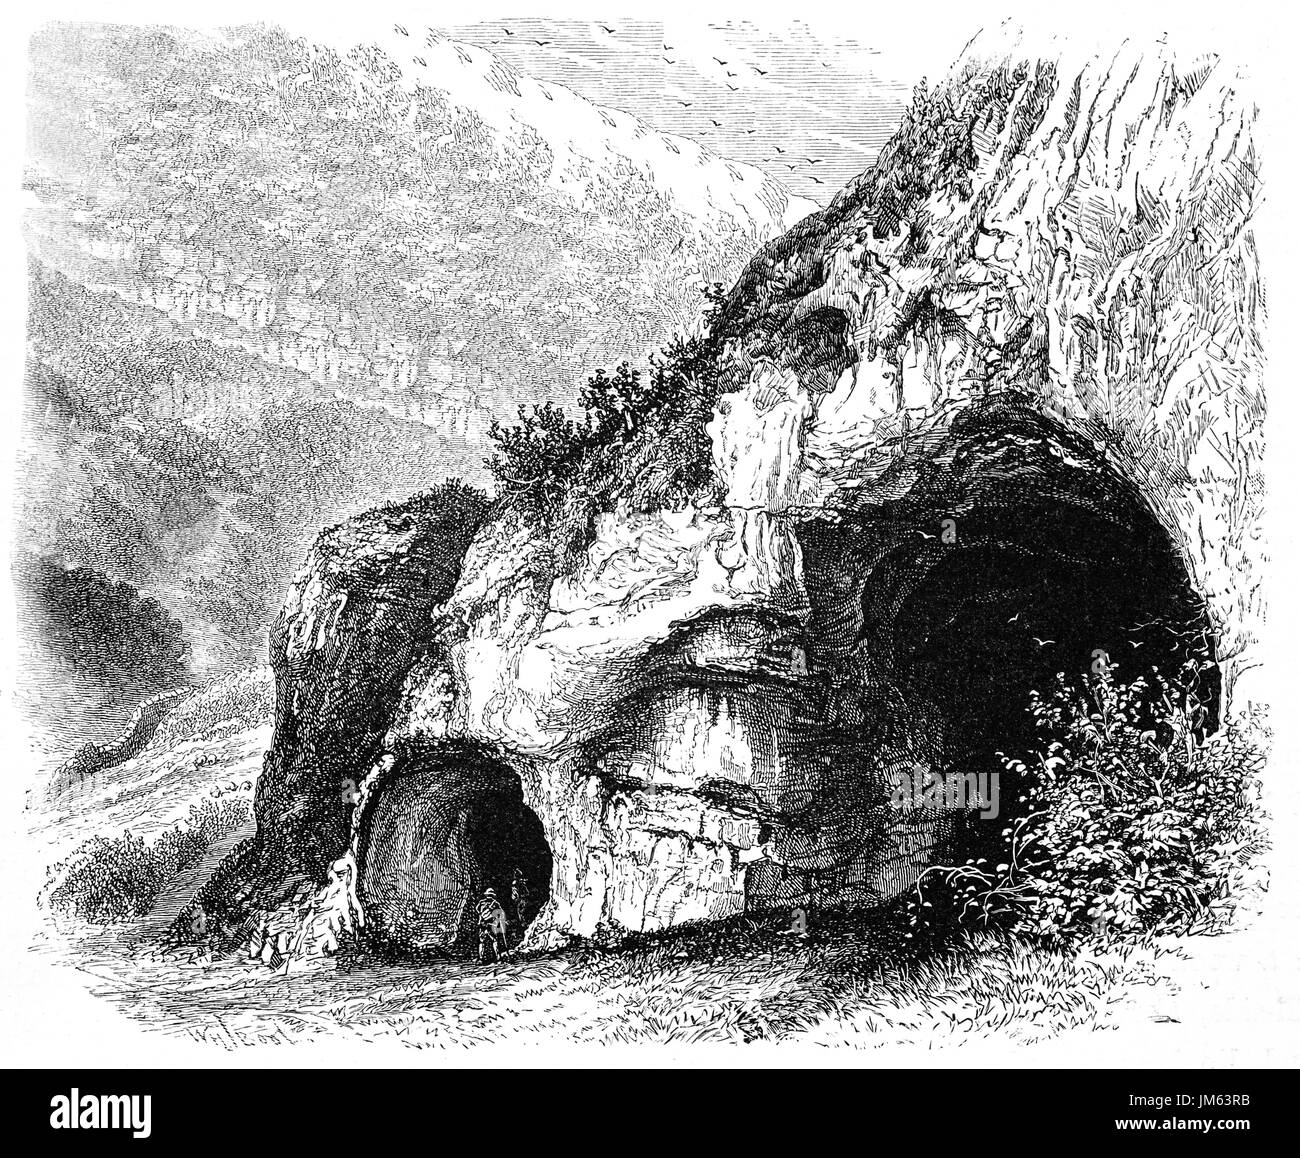 1870 : les marcheurs explorant l'un des trous dans la colombe Dovedale, une vallée dans le Peak District, Derbyshire, Angleterre Banque D'Images